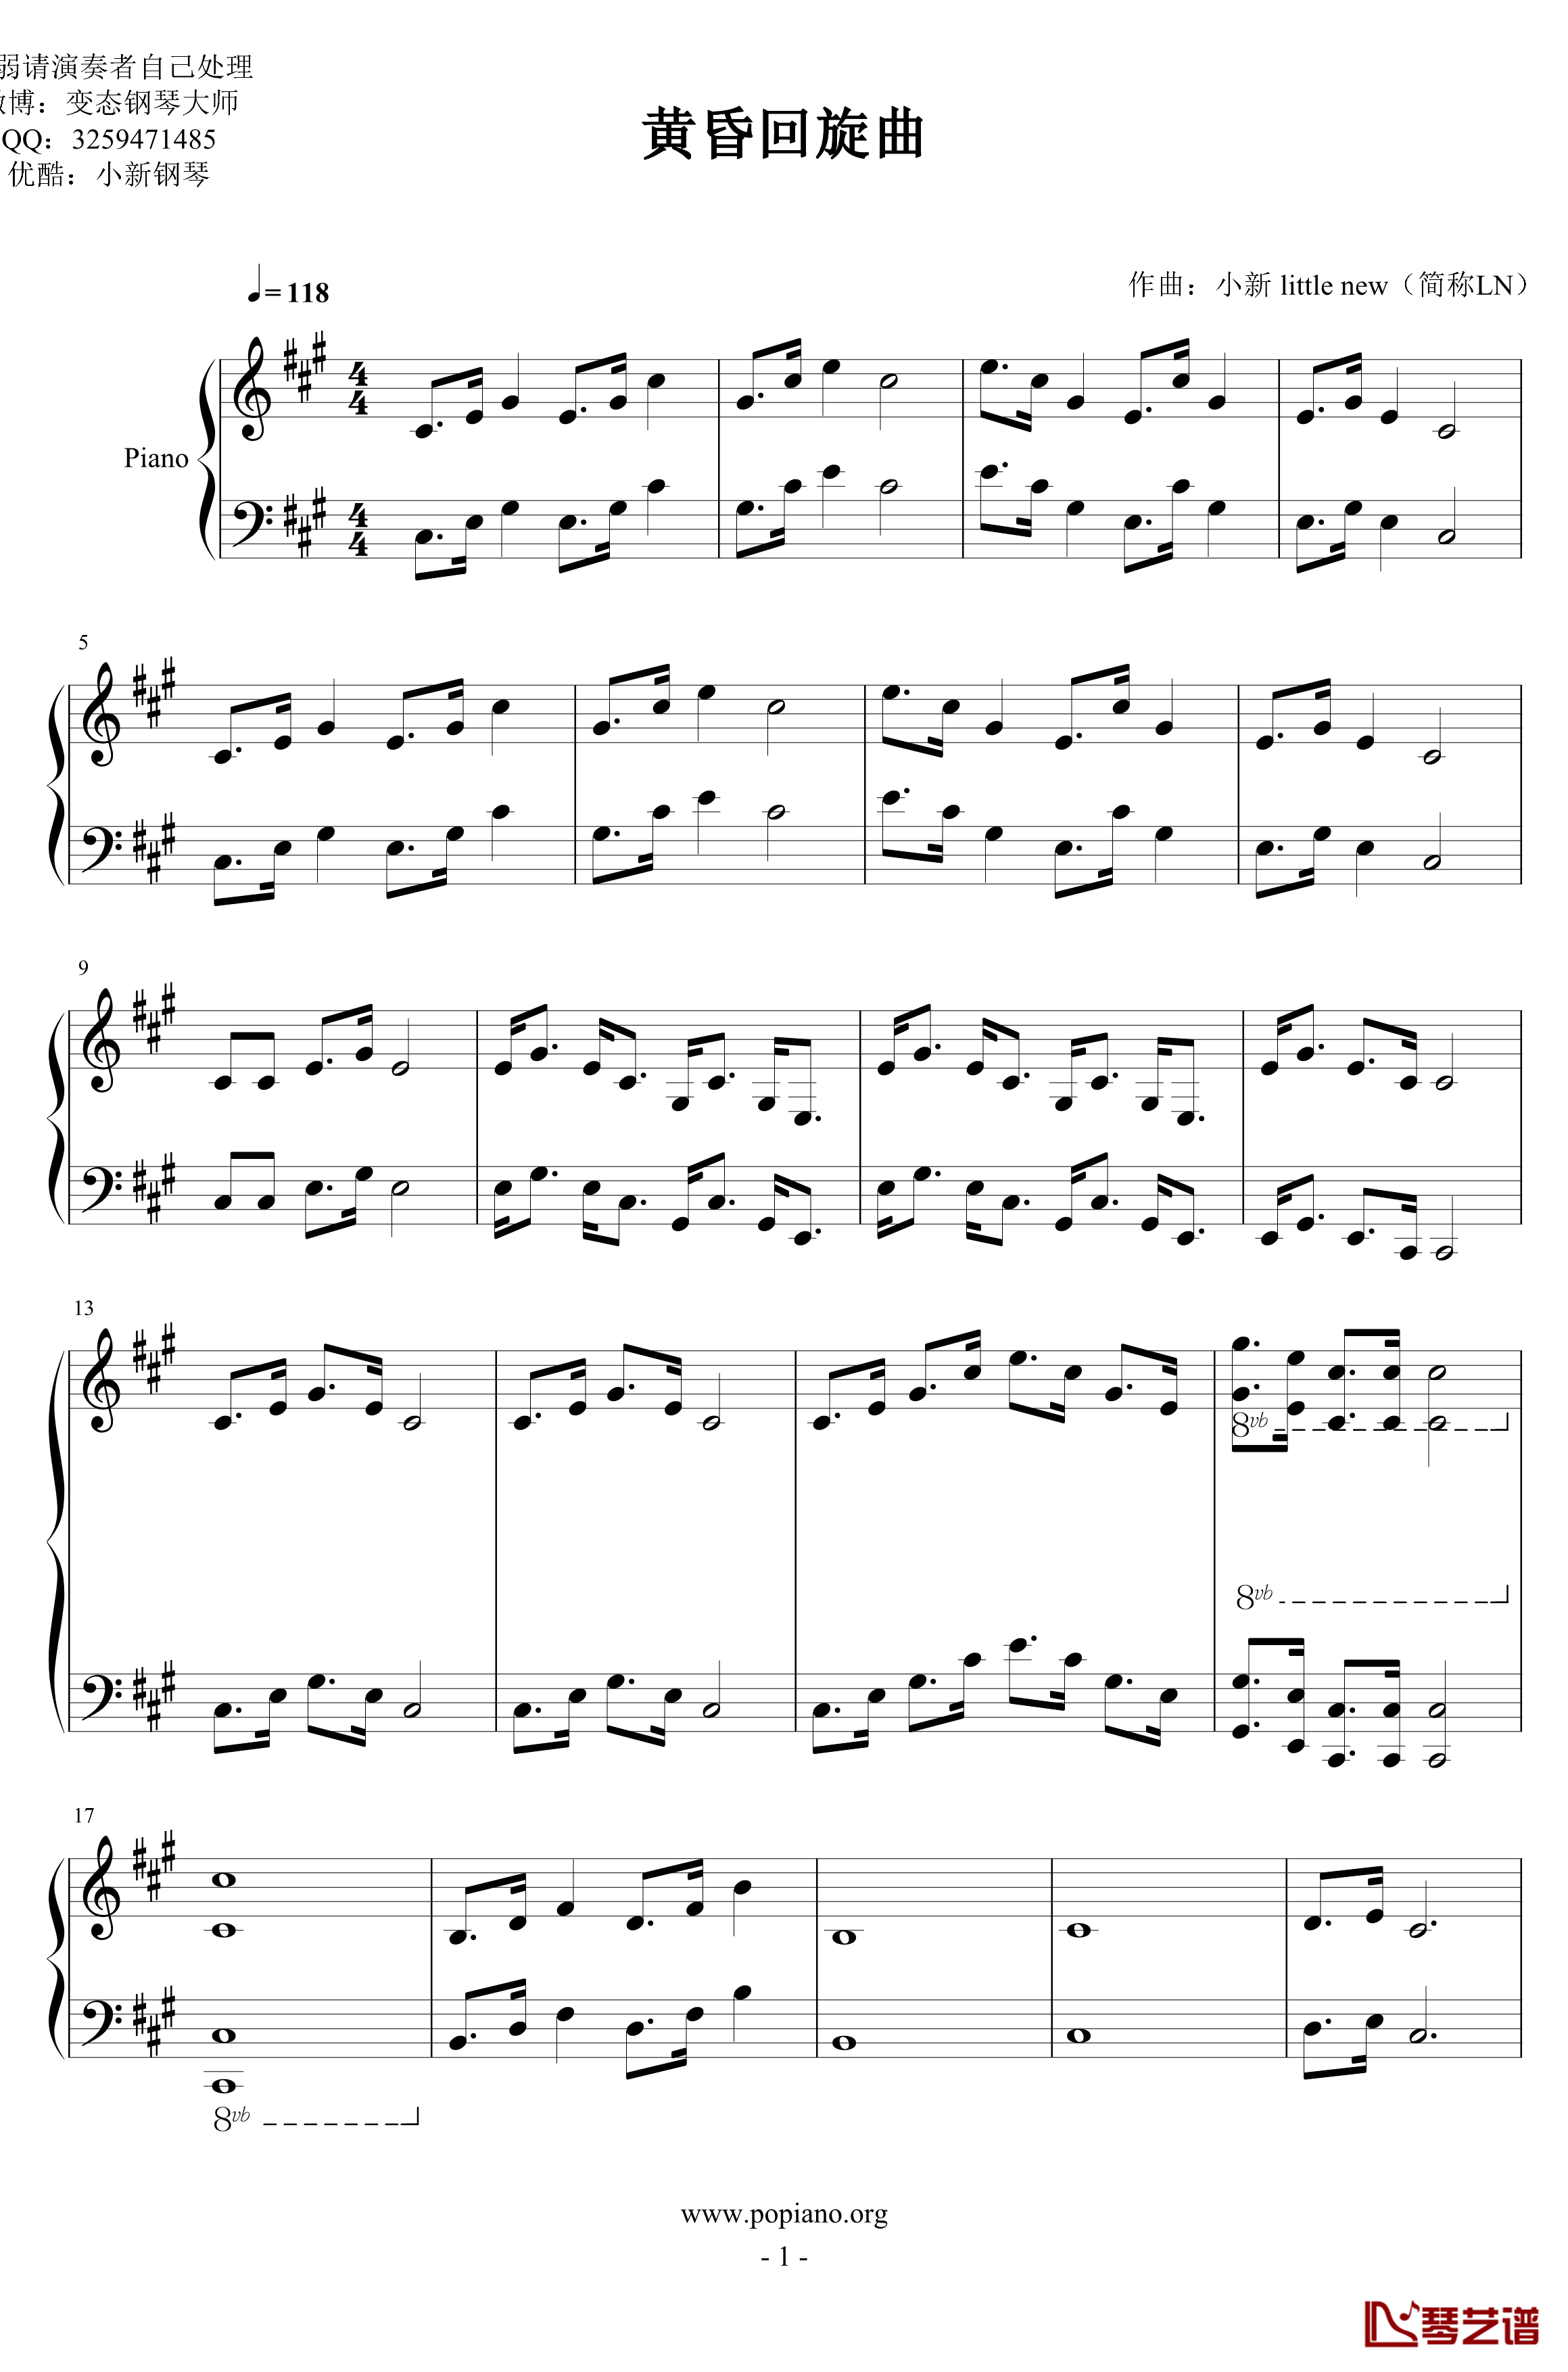 黄昏回旋曲钢琴谱-LN原创-pltp20176211137- Op.1